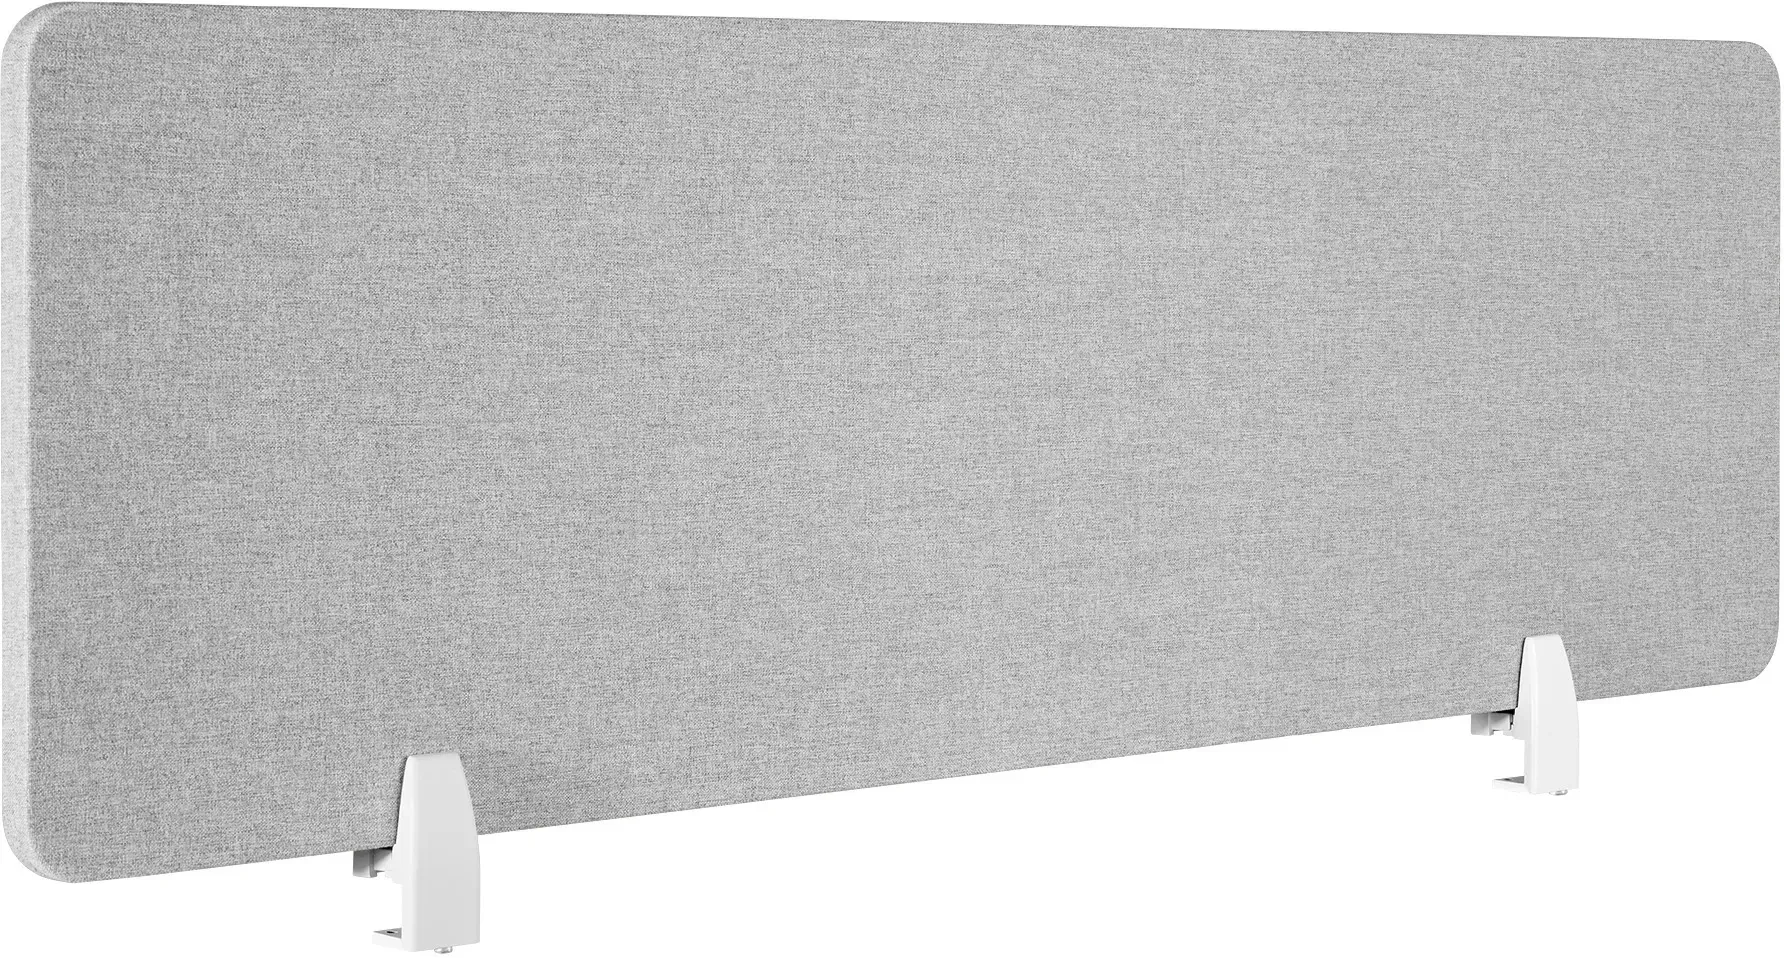 tectake Schreibtisch Trennwand Noisy mit abgerundeten Ecken - 130 x 40 cm, grau